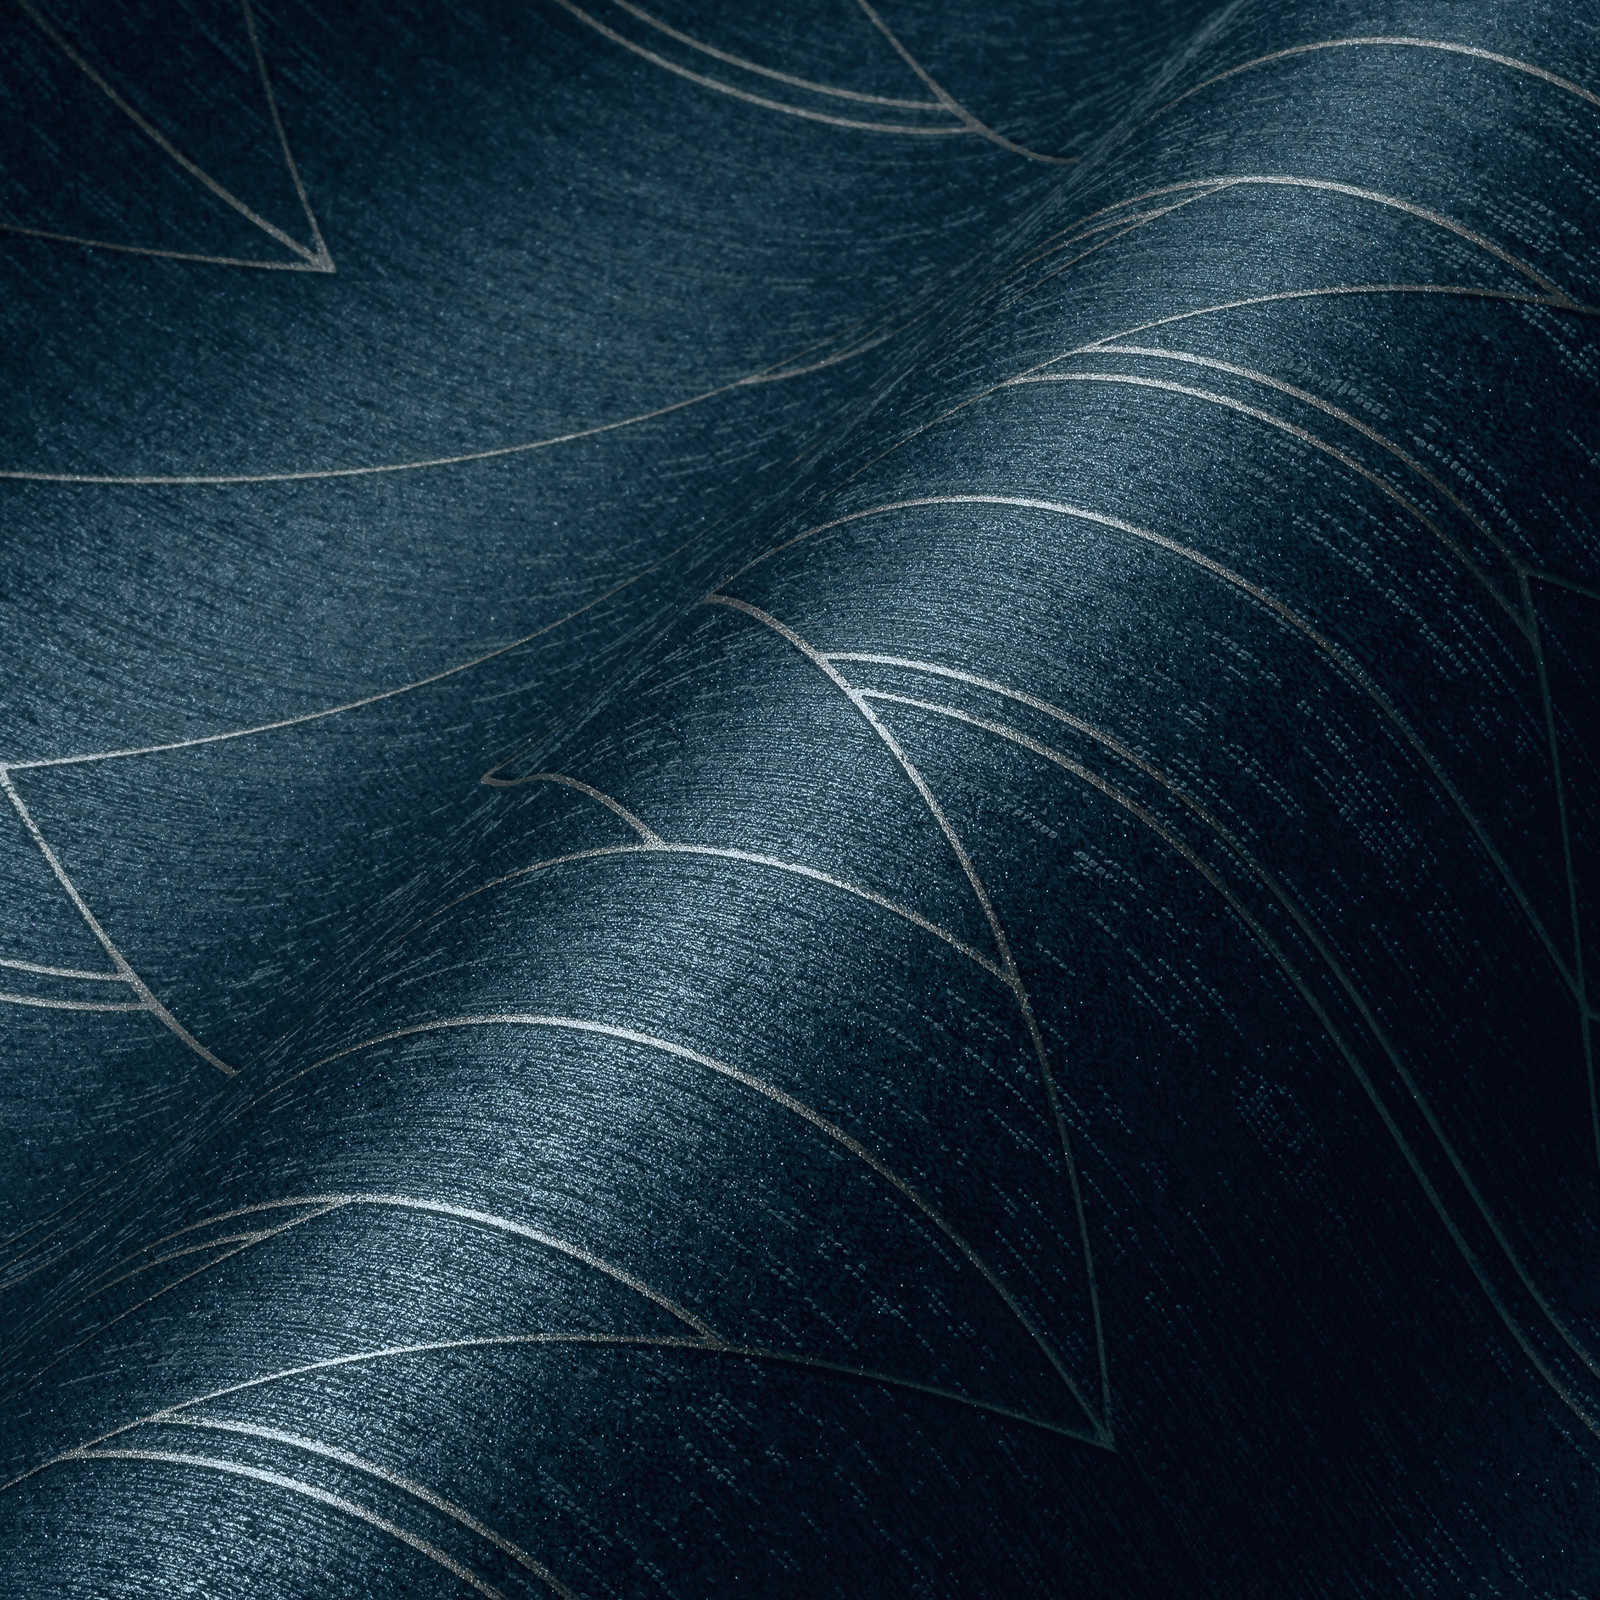             Papel pintado azul oscuro con diseño gráfico plateado y efecto brillante - Azul, Metálico
        